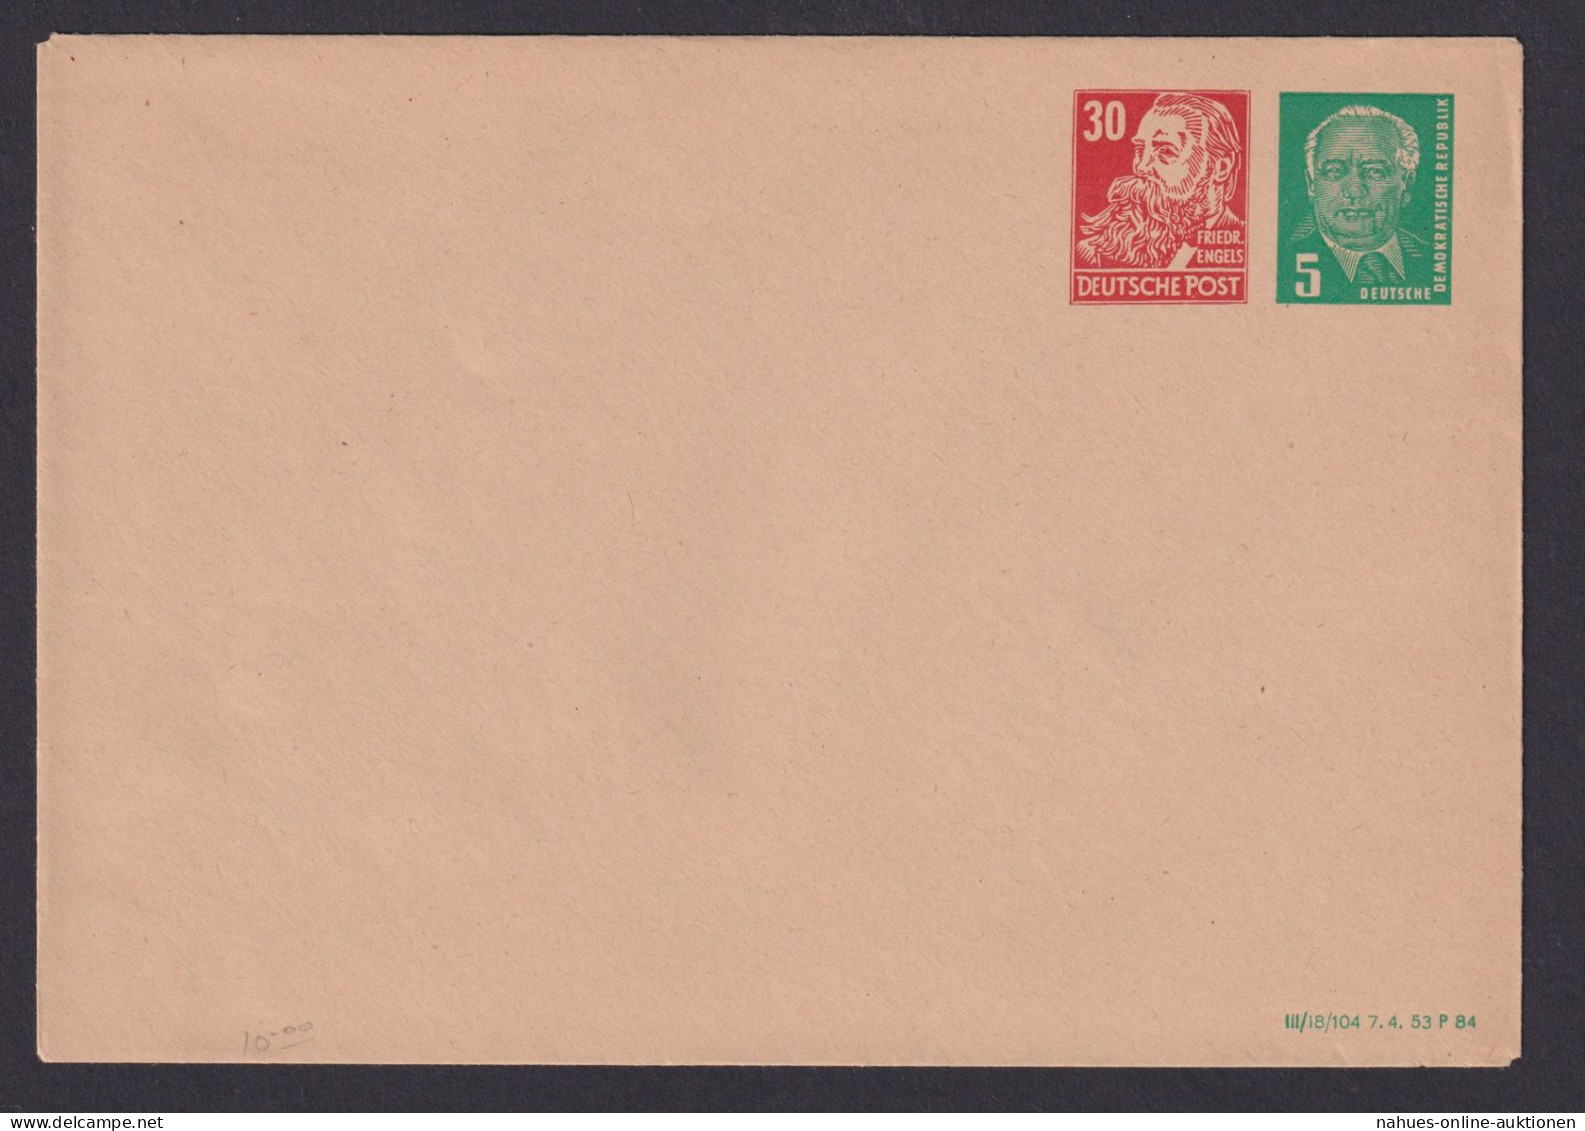 Briefmarken DDR Privatganzsache PU 9 30 Neben 5 Pfg. Mit Druckdatum 1984 Pieck - Postcards - Used